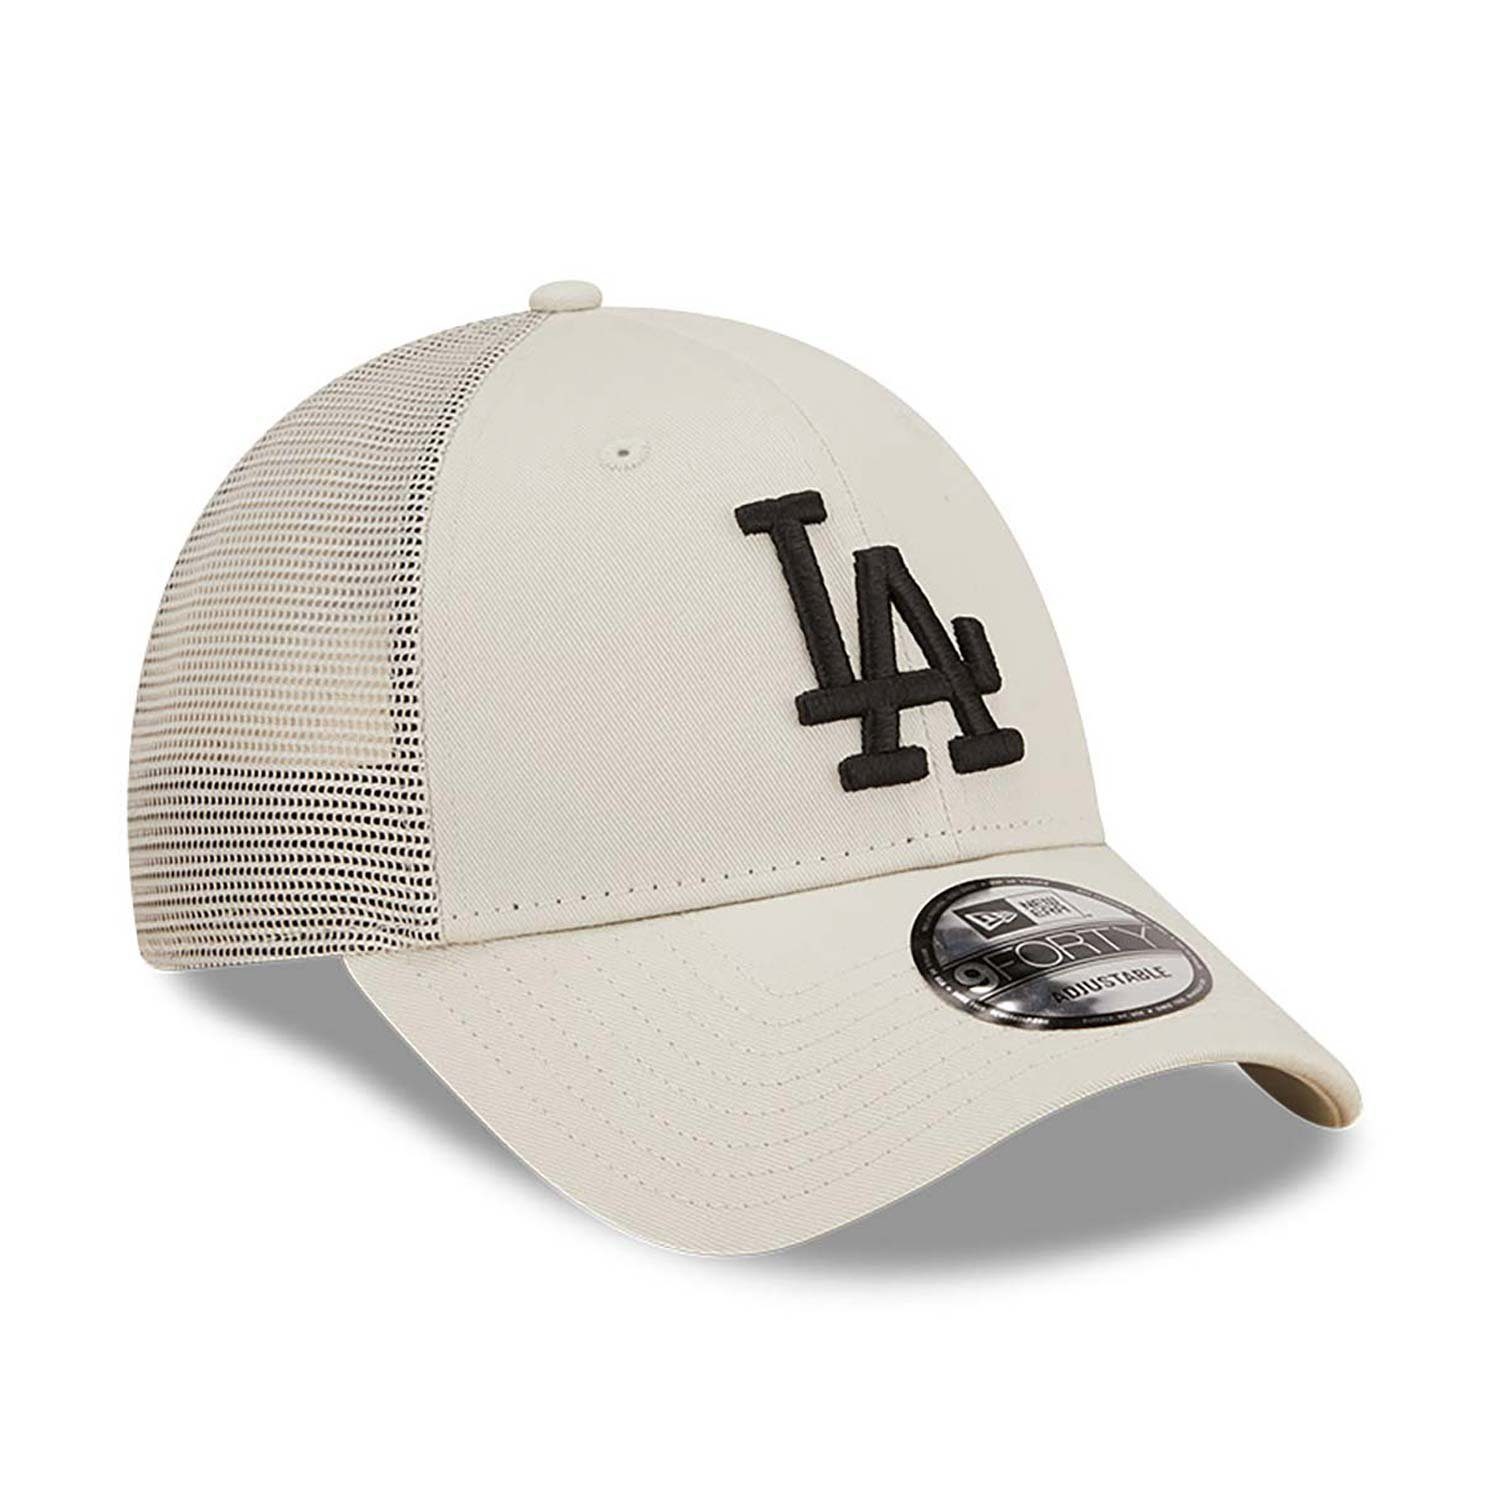 LA Cap New Trucker Dodgers Era